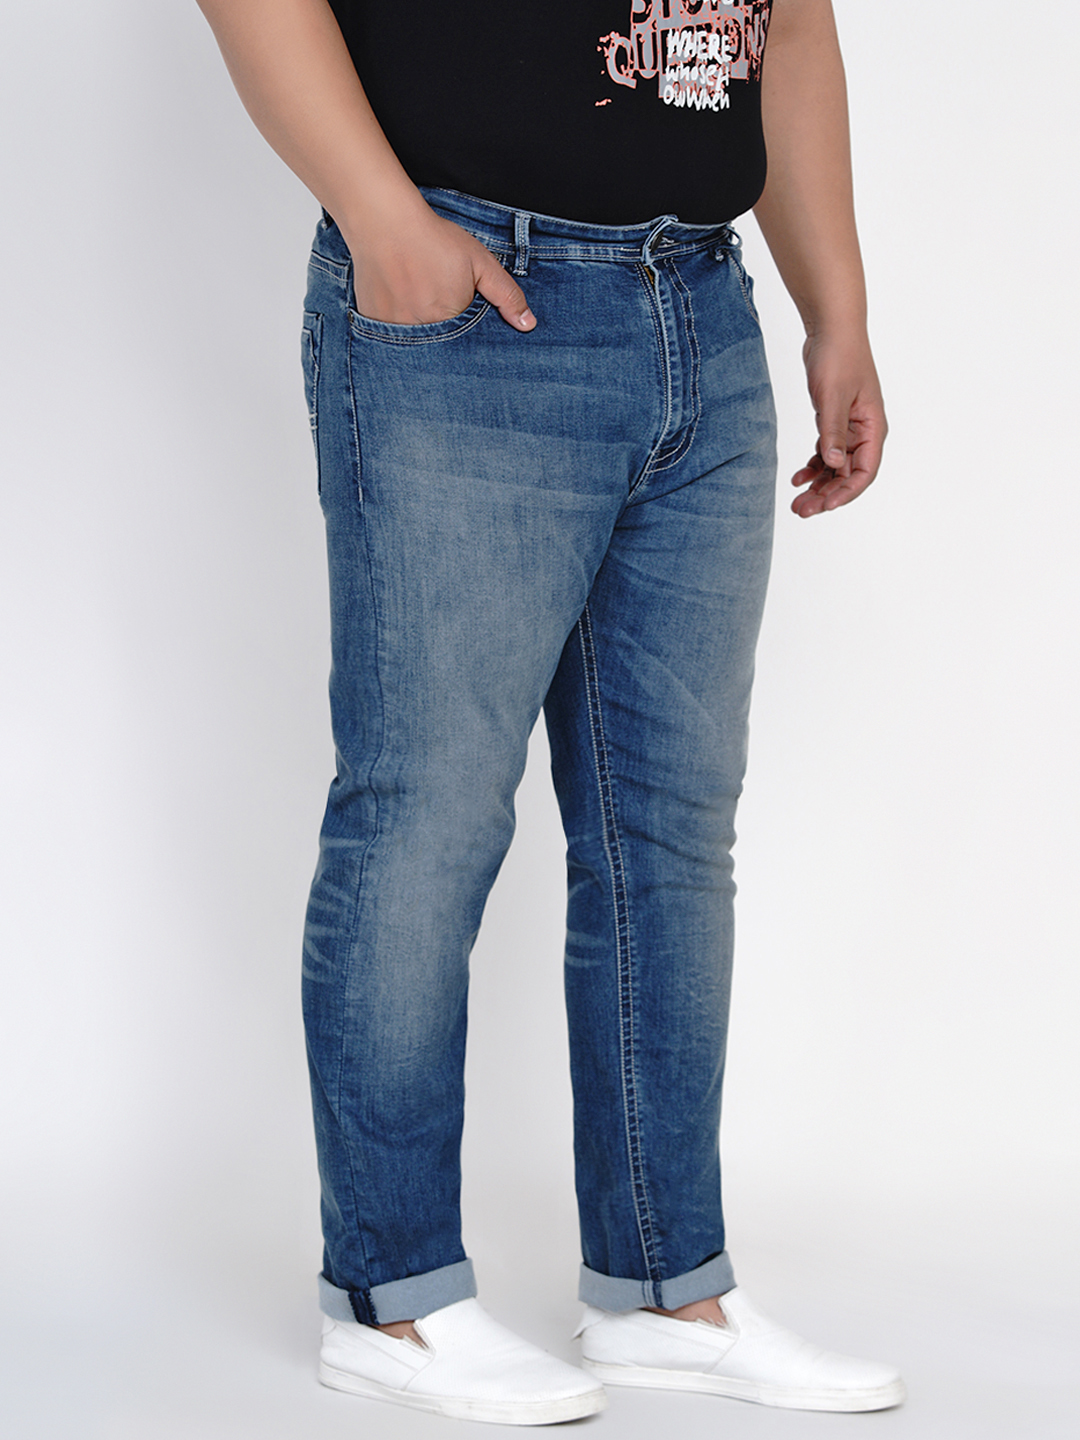 bottomwear/jeans/JPJ12117/jpj12117-3.jpg